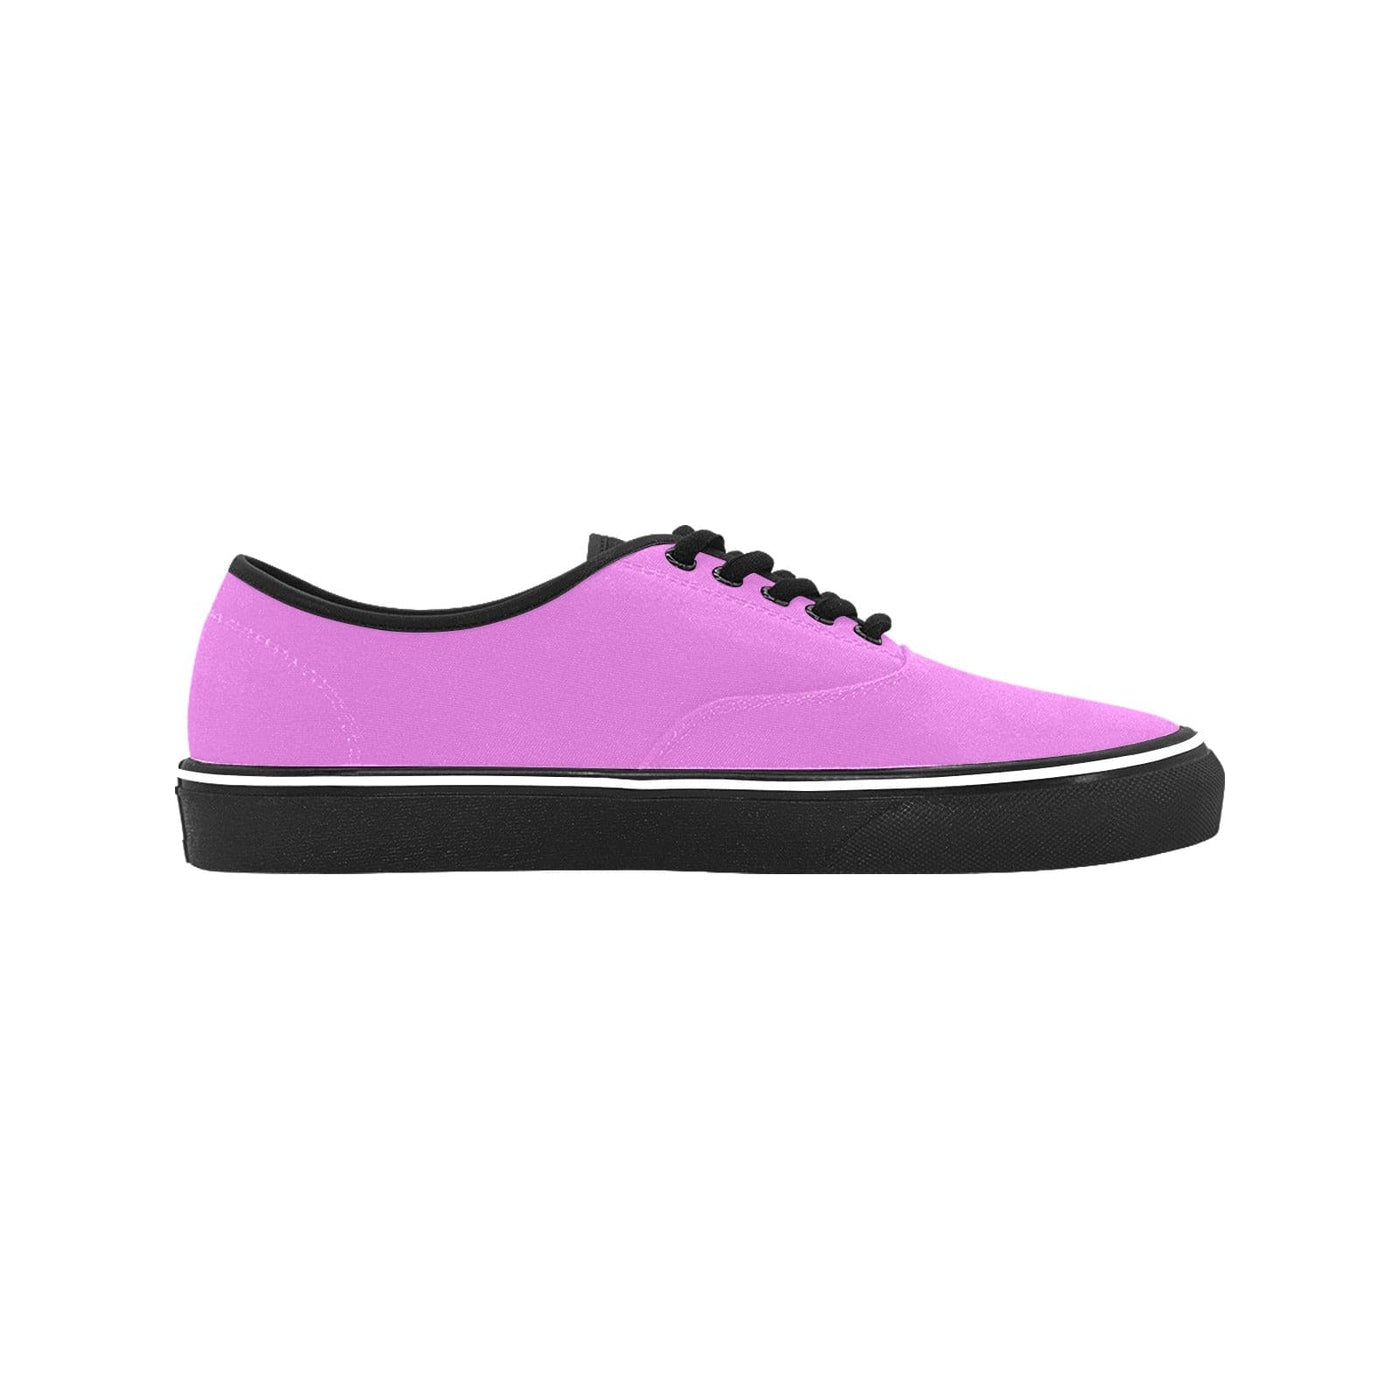 Womens Sneakers Purple Lavender Canvas Skate Shoes Size 7.5 - Deals | Shoes